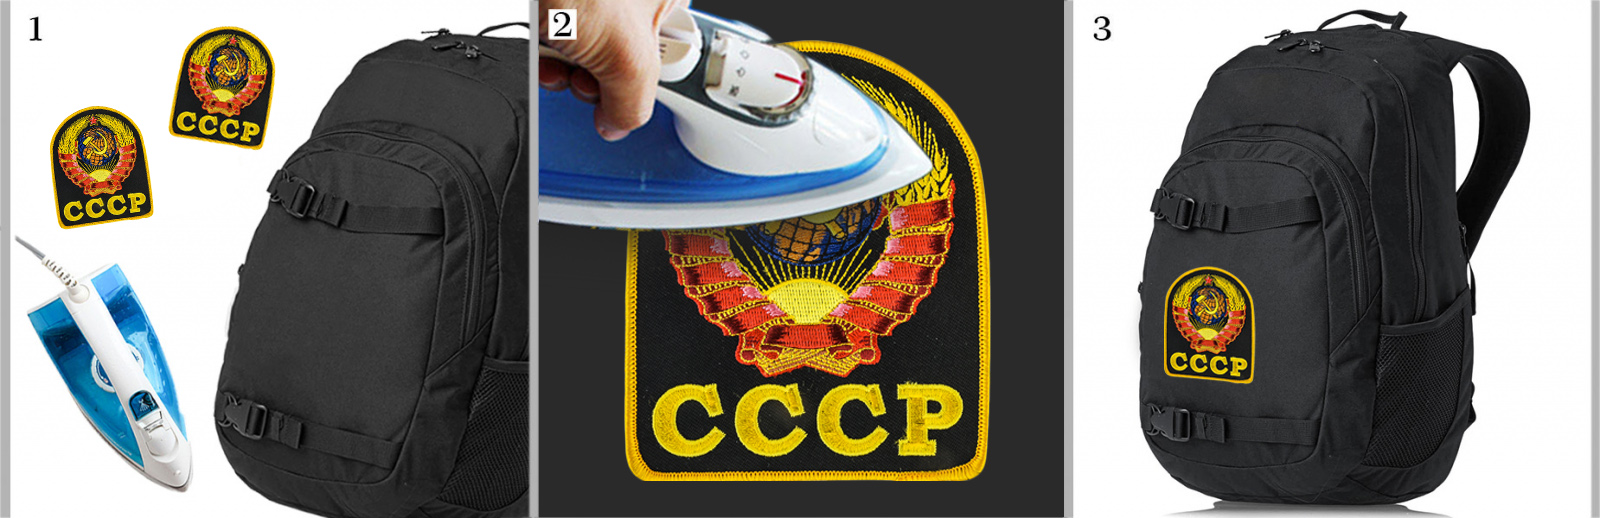 Цветная нашивка с гербом СССР 